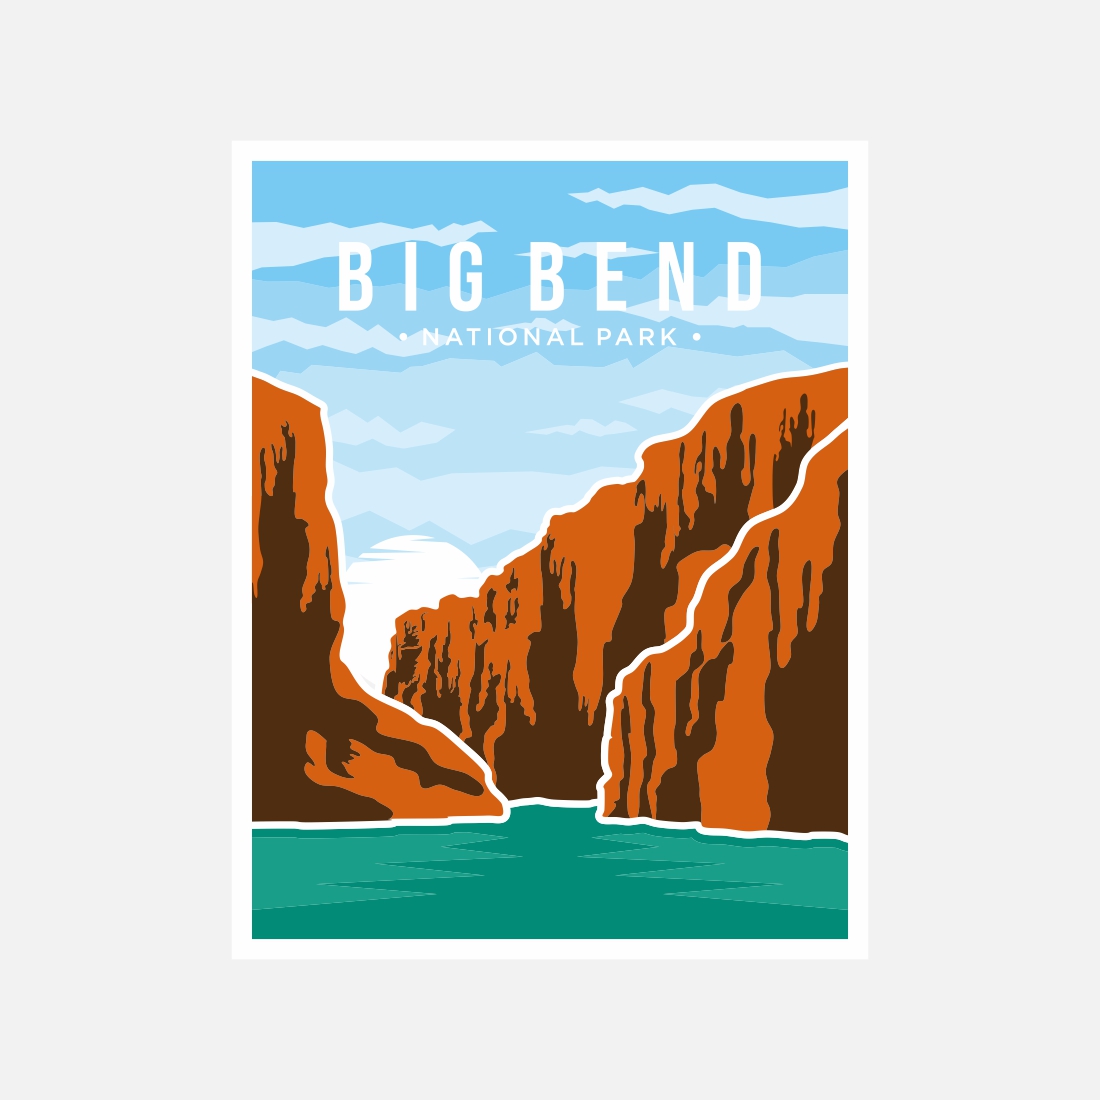 Big Bend National Park poster vector illustration design – Only $8 preview image.